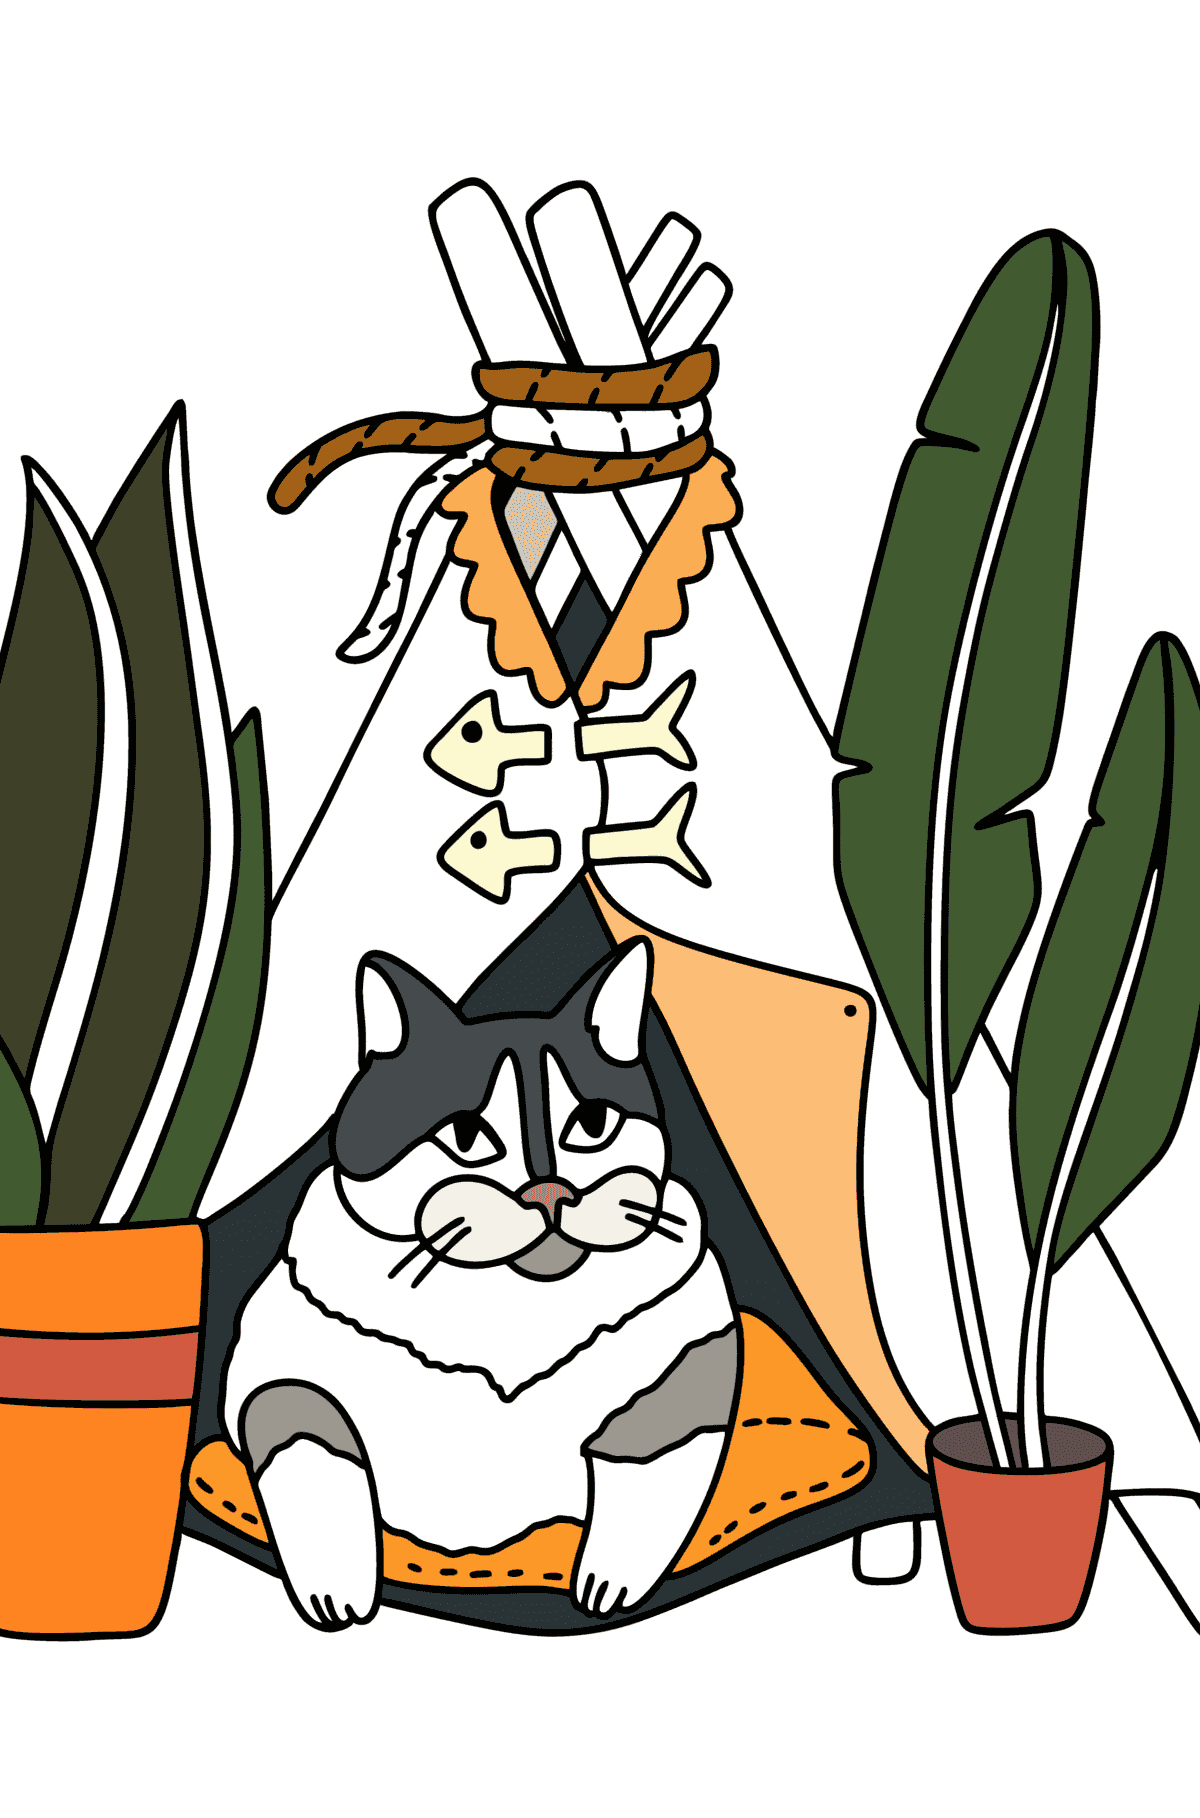 Раскраска Домик кота - Картинки для Детей